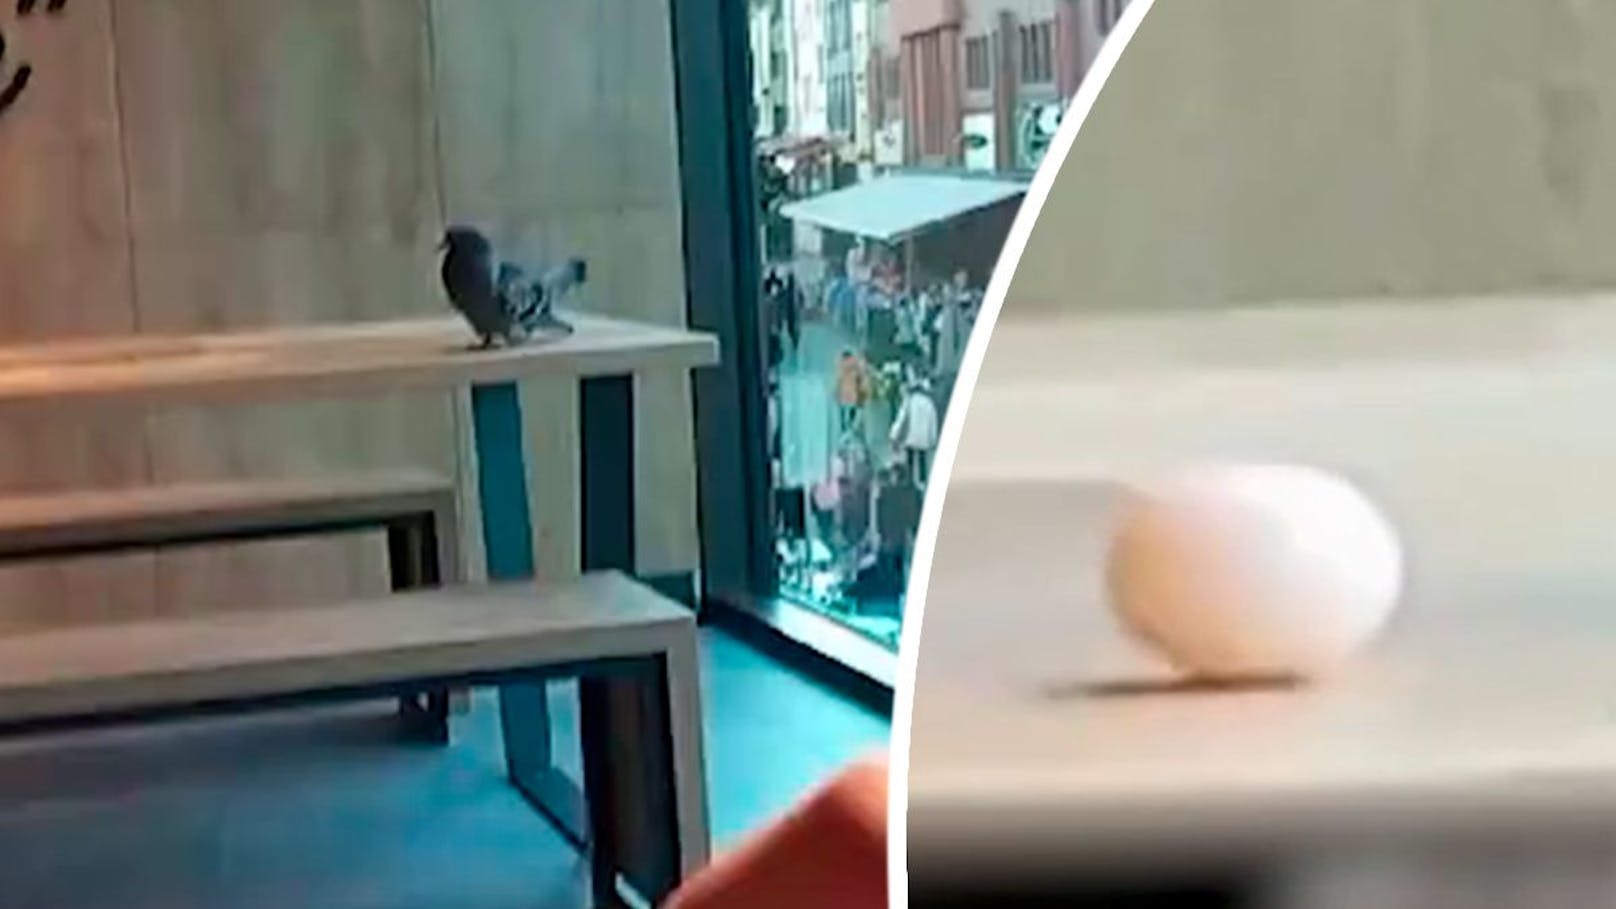 Taube legt Ei auf Tisch mitten in Fast-Food-Restaurant